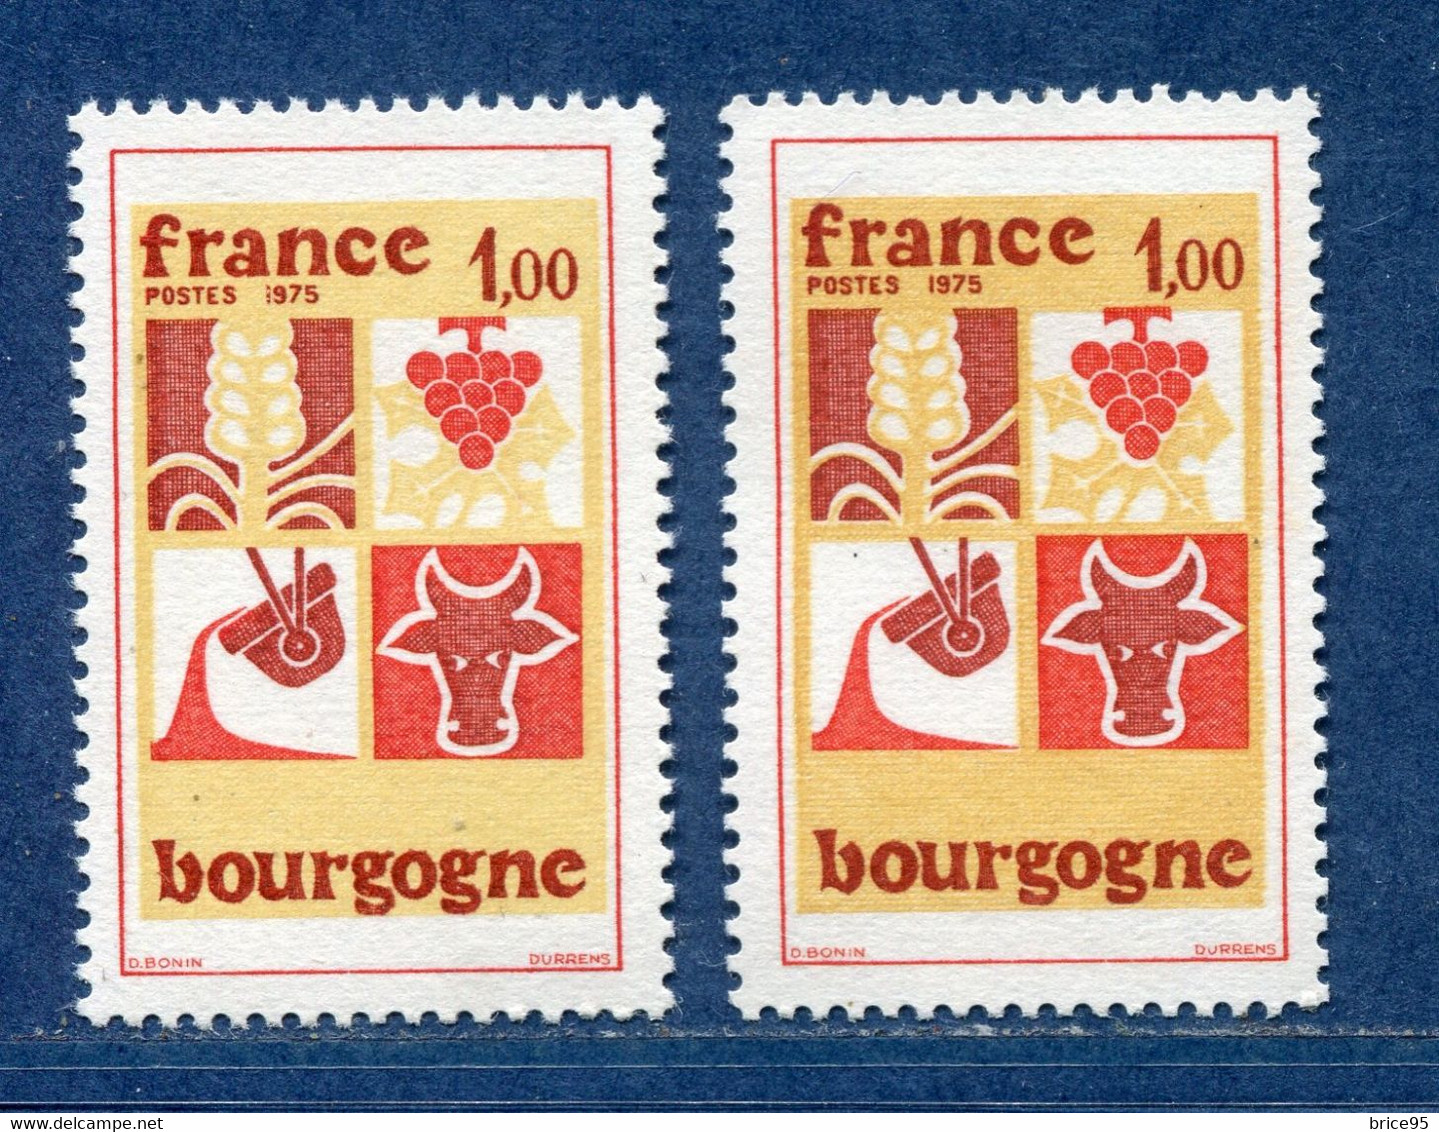 ⭐ France - Variété - YT N° 1848 - Couleurs - Pétouille - Neuf Sans Charnière - 1975 ⭐ - Nuovi